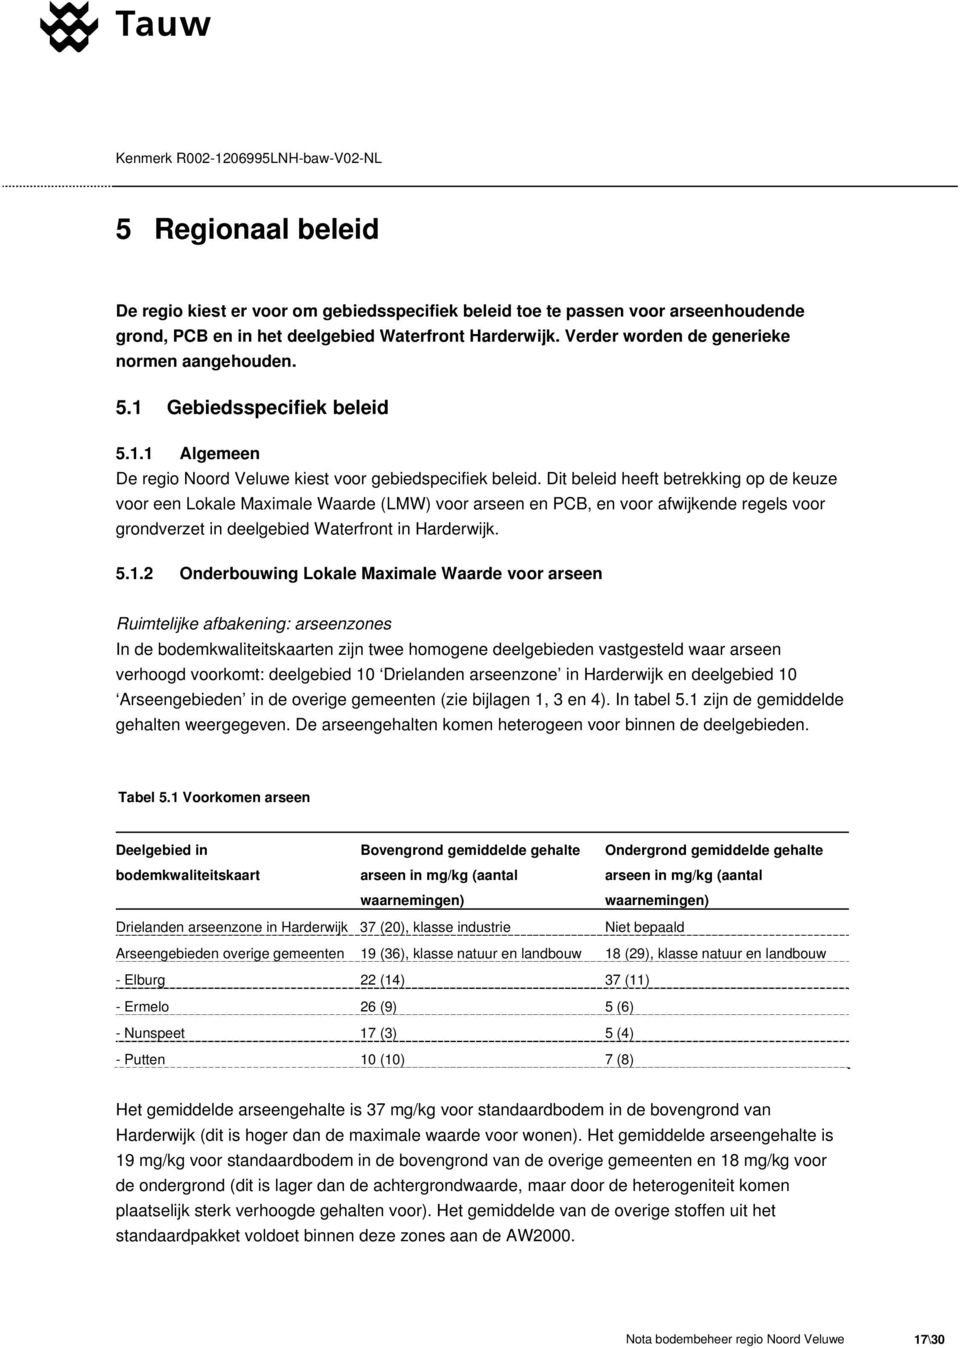 Dit beleid heeft betrekking op de keuze voor een Lokale Maximale Waarde (LMW) voor arseen en PCB, en voor afwijkende regels voor grondverzet in deelgebied Waterfront in Harderwijk. 5.1.